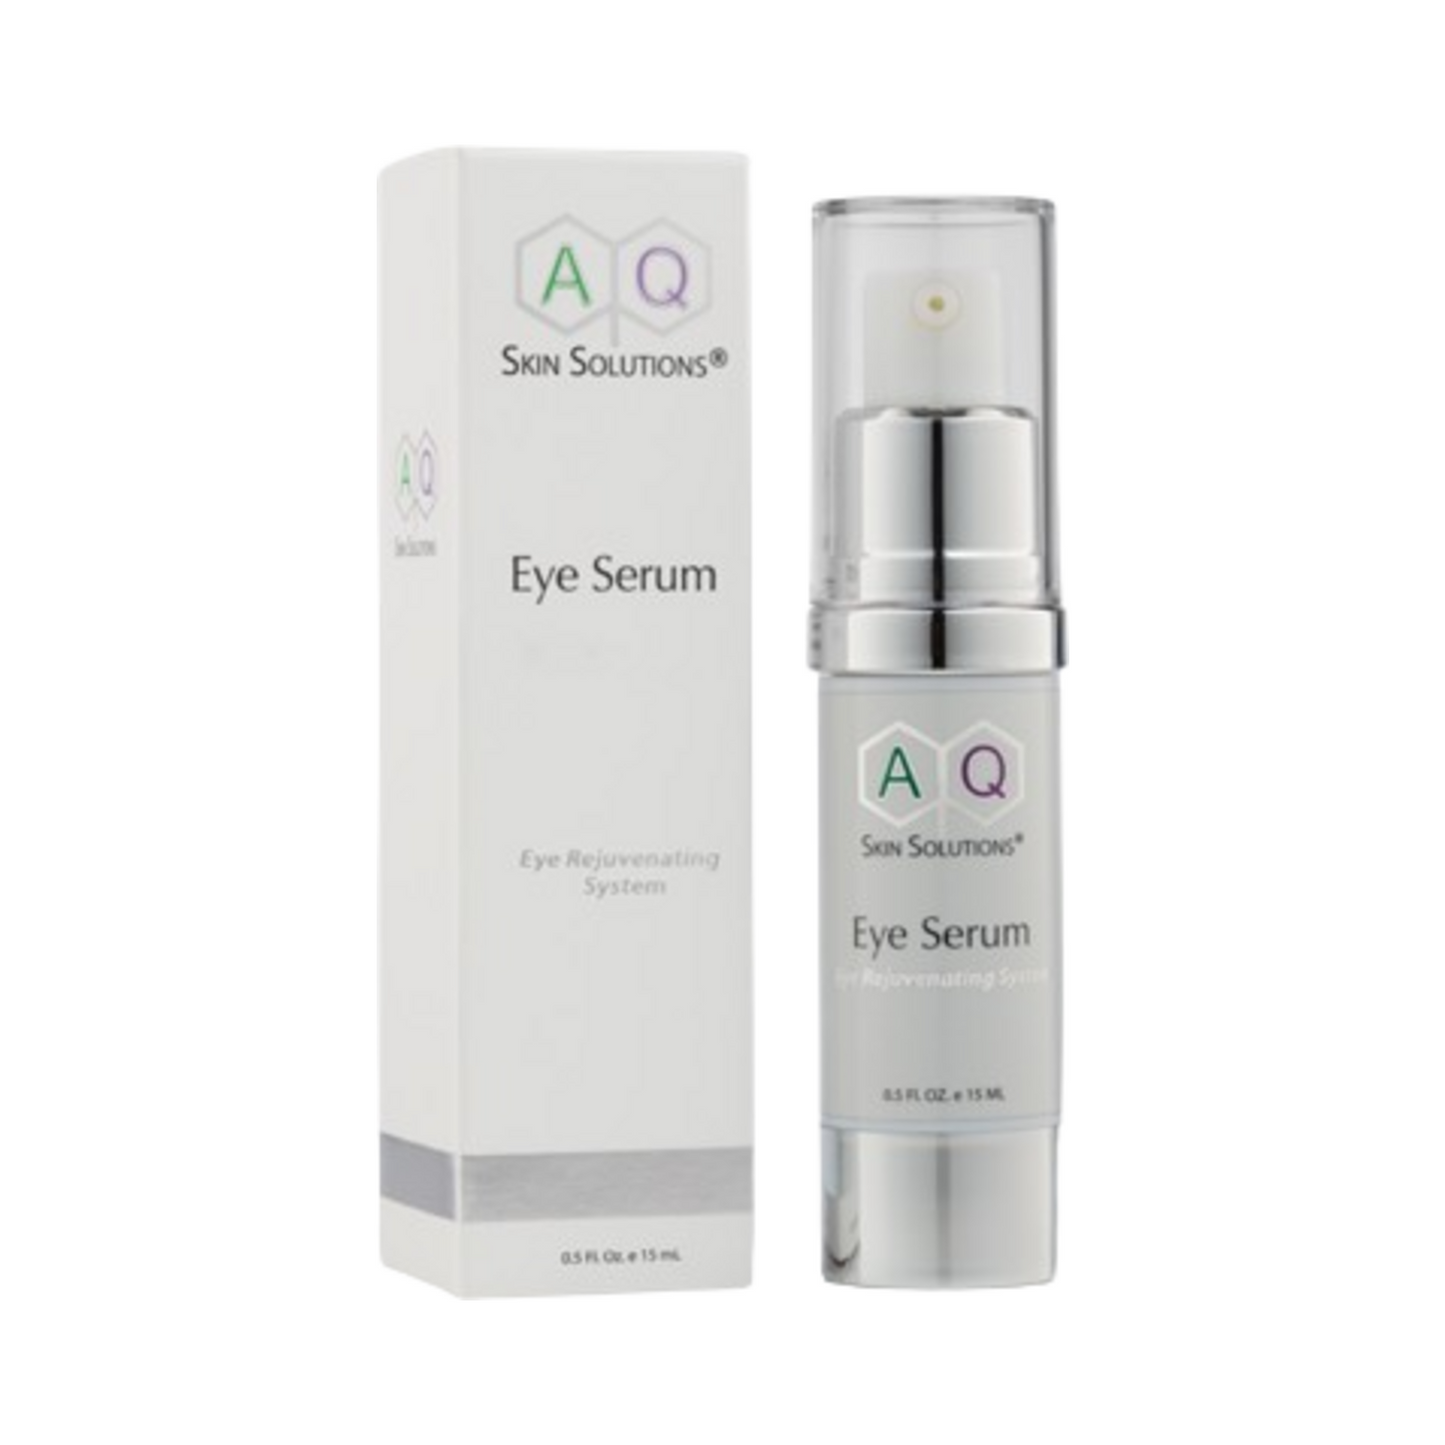 Sérum pour les yeux AQ Skin Solutions - Système de rajeunissement des yeux